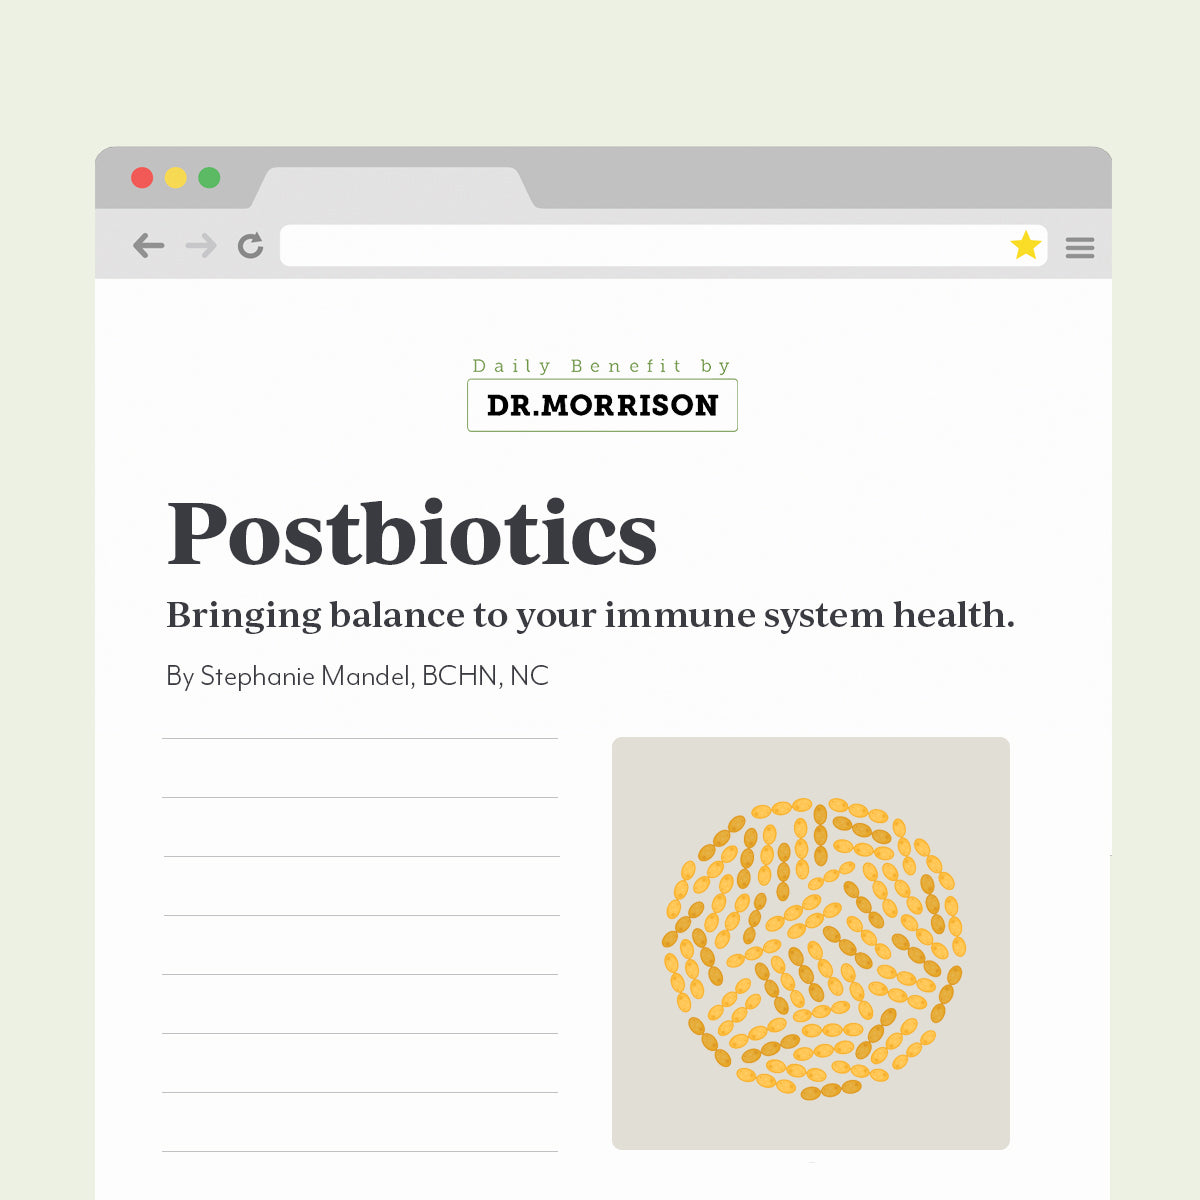 Postbiotics